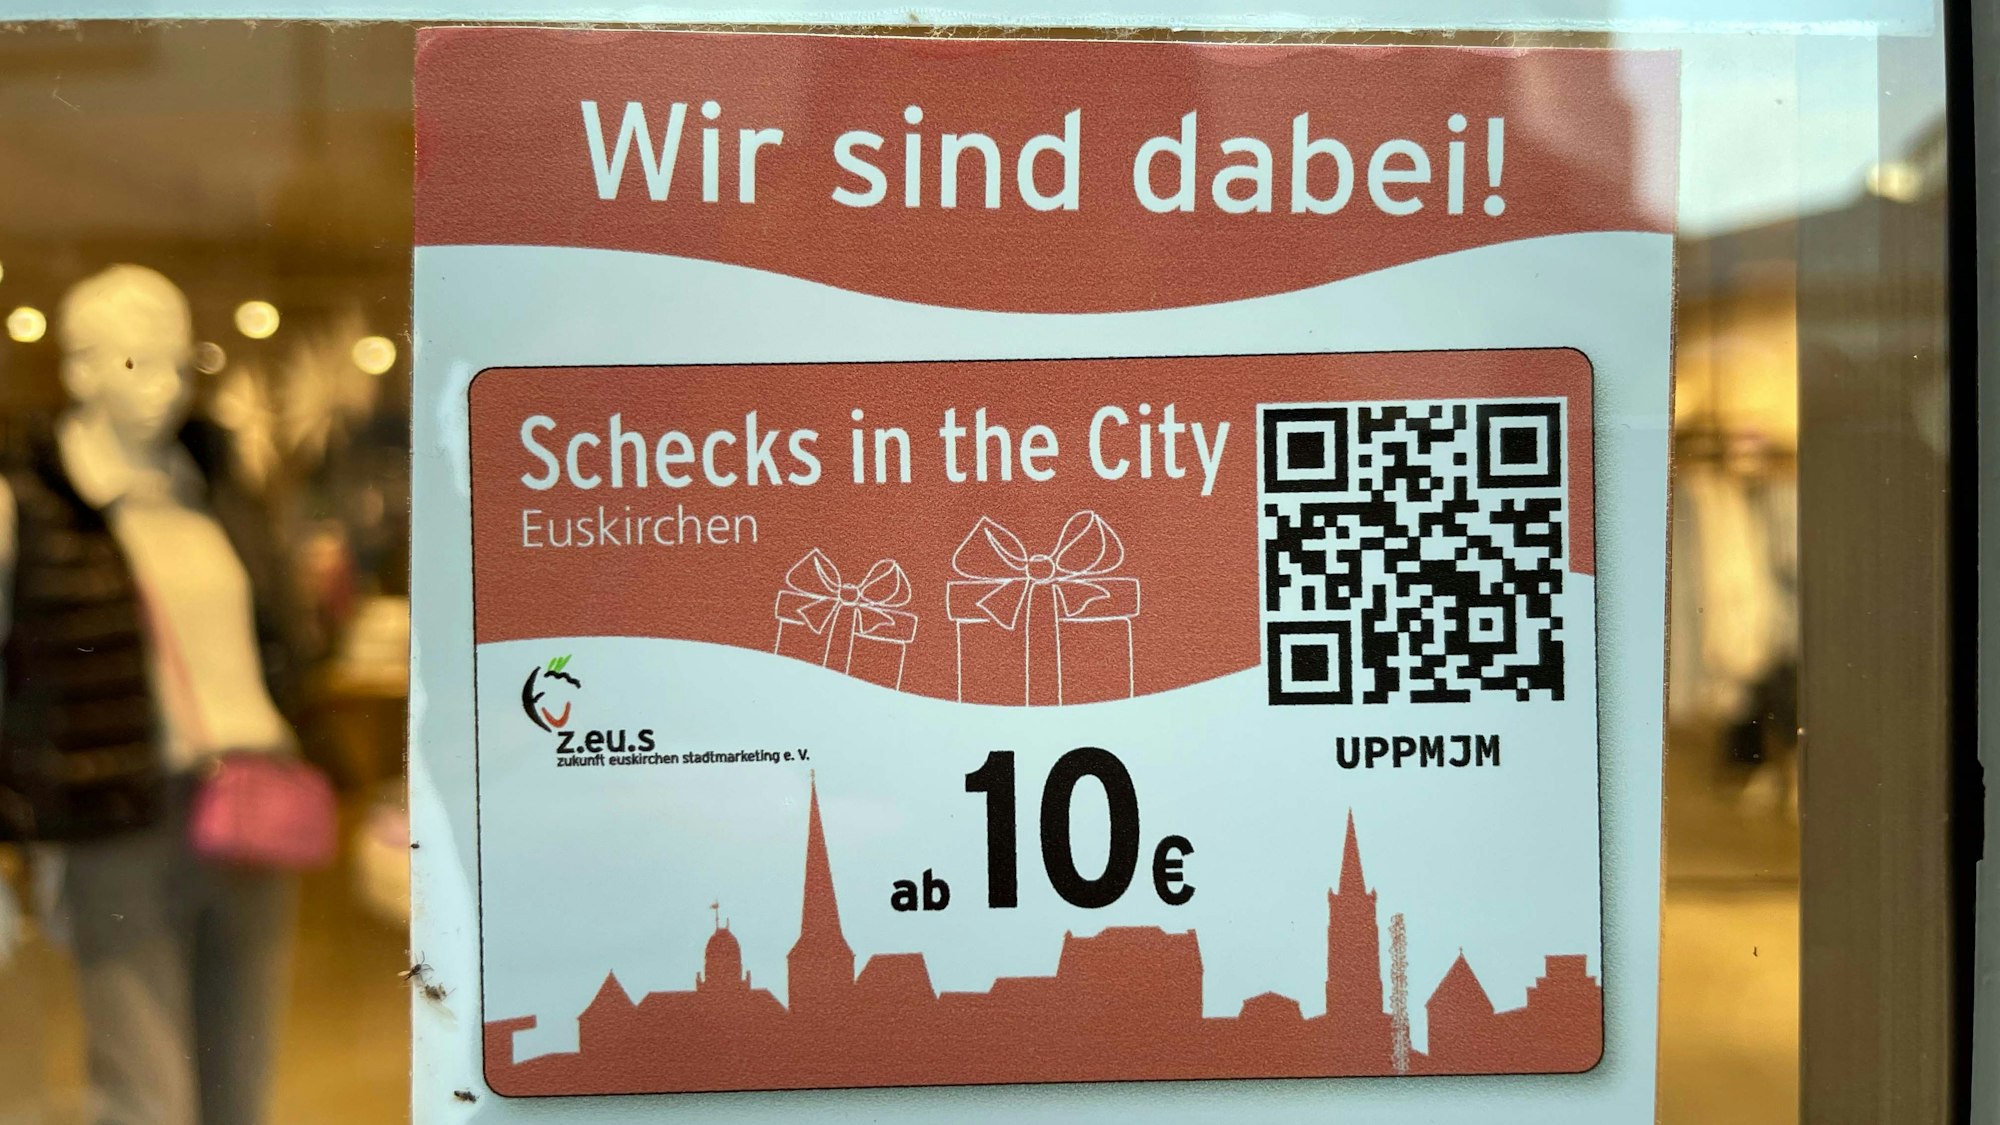 Ein Geschäft in Euskirchen wirbt mit der Aktion „Schecks in the City“